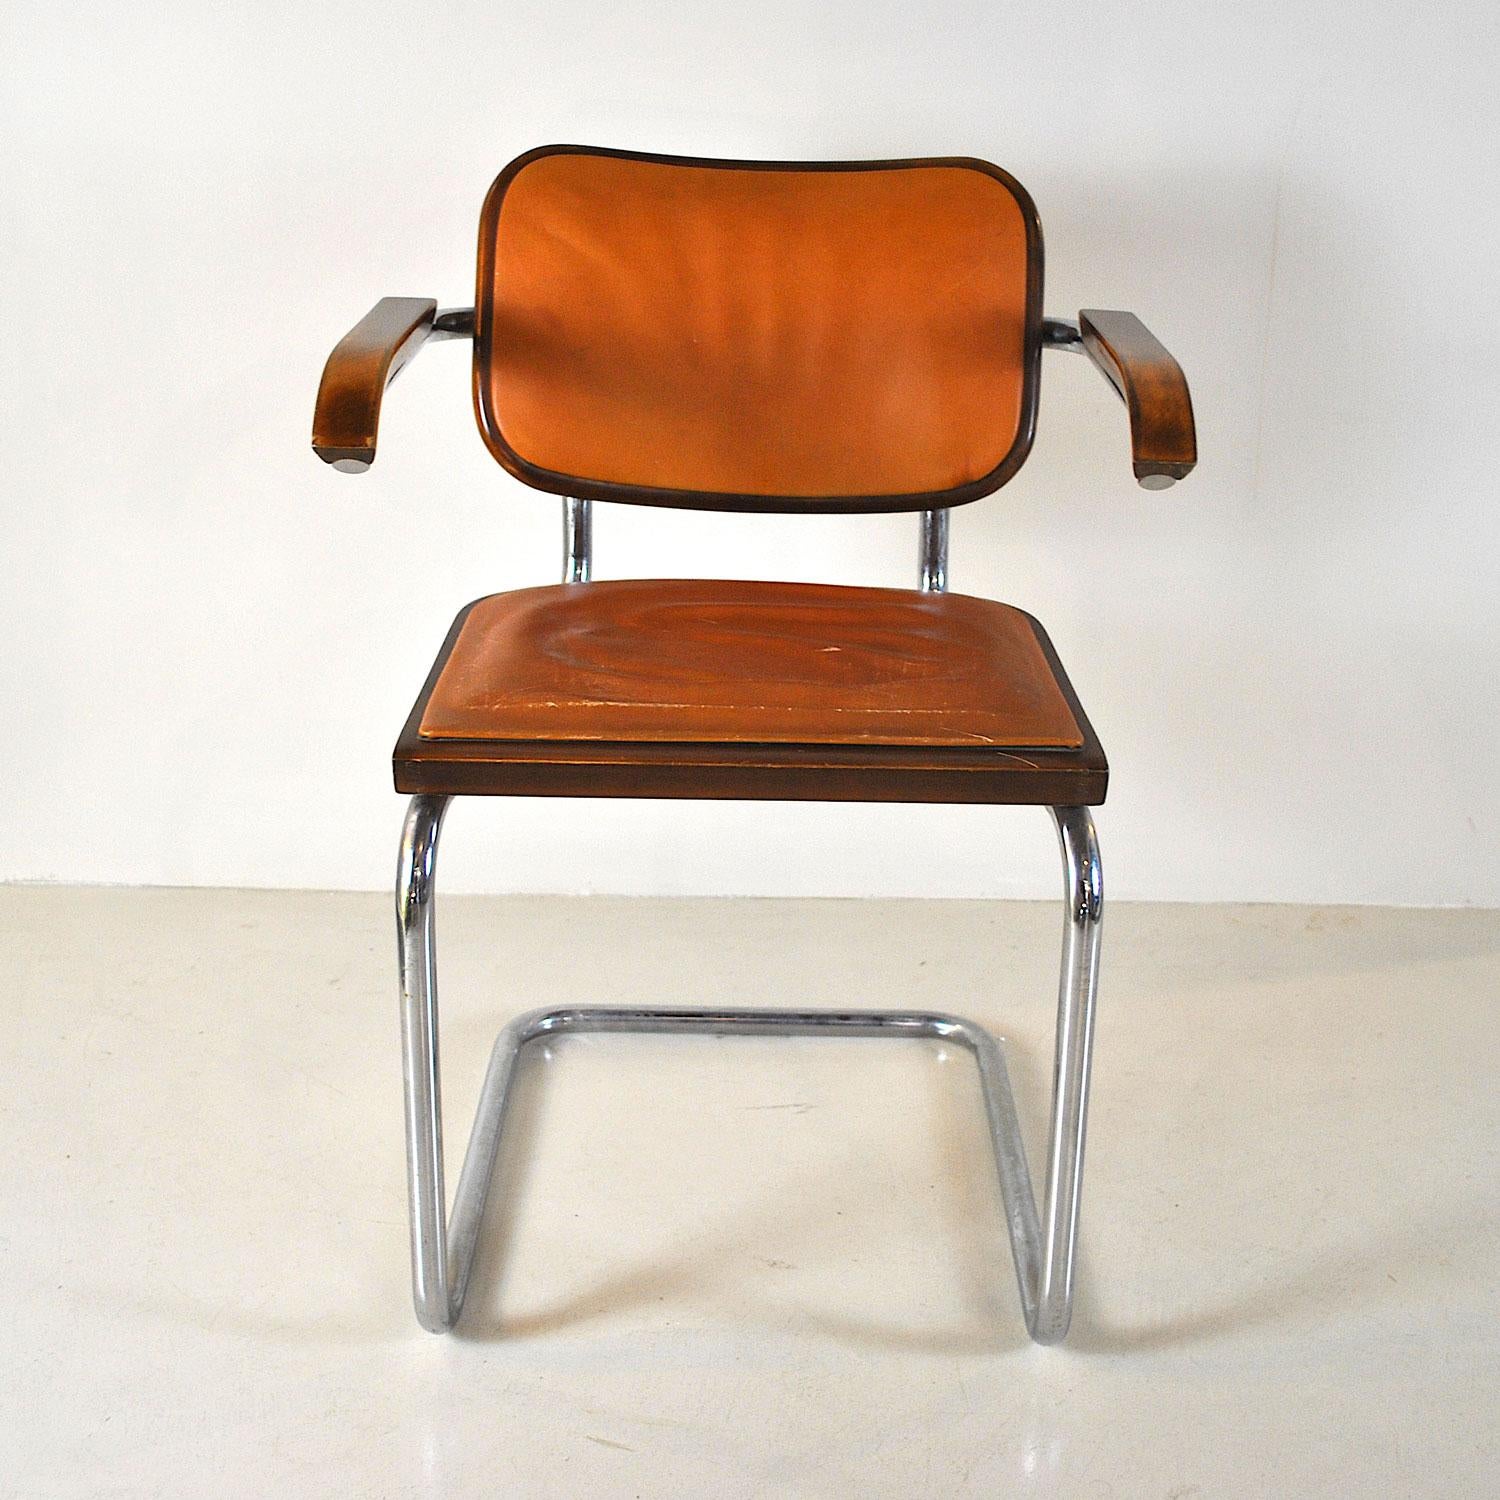 Chaise dans le style du modèle Cesca S64 de Marcel Breuer des années 1960 en bois et peau de four.